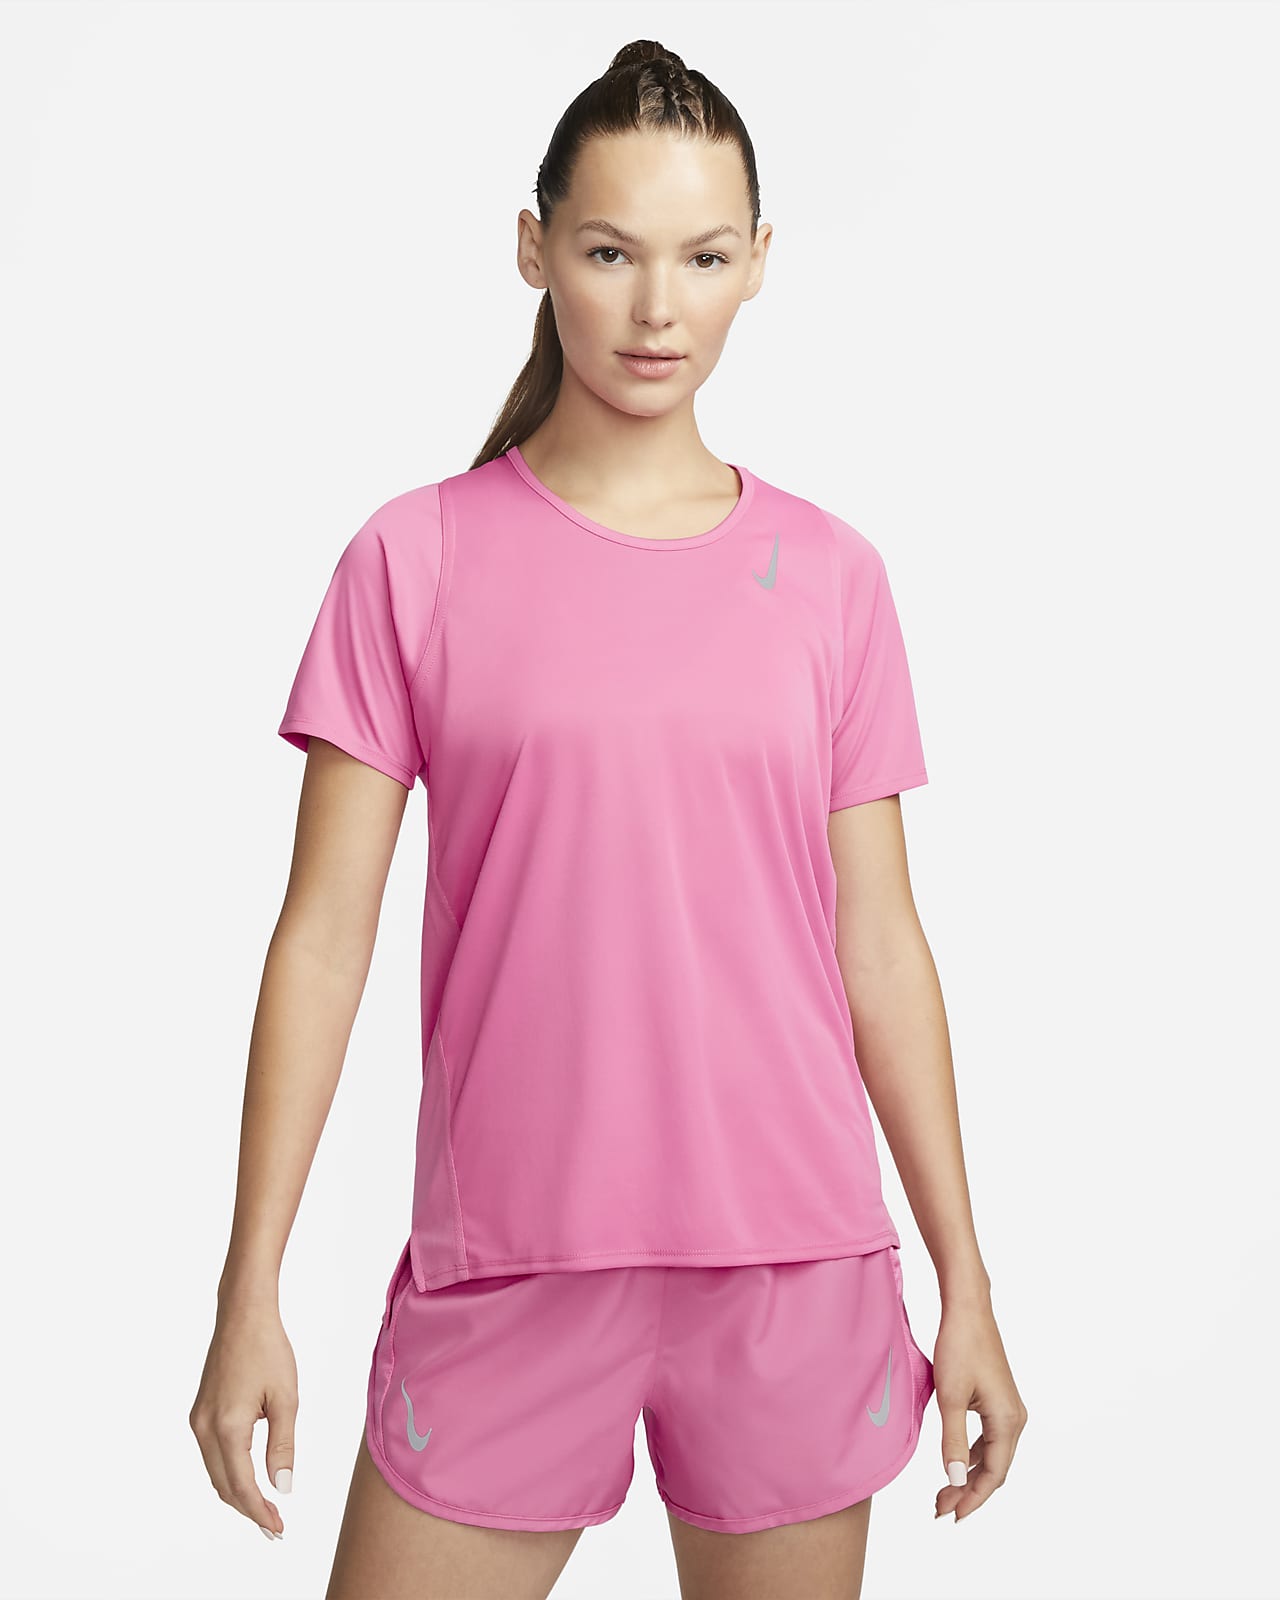 Women's Running Tops & T-Shirts. Nike AU